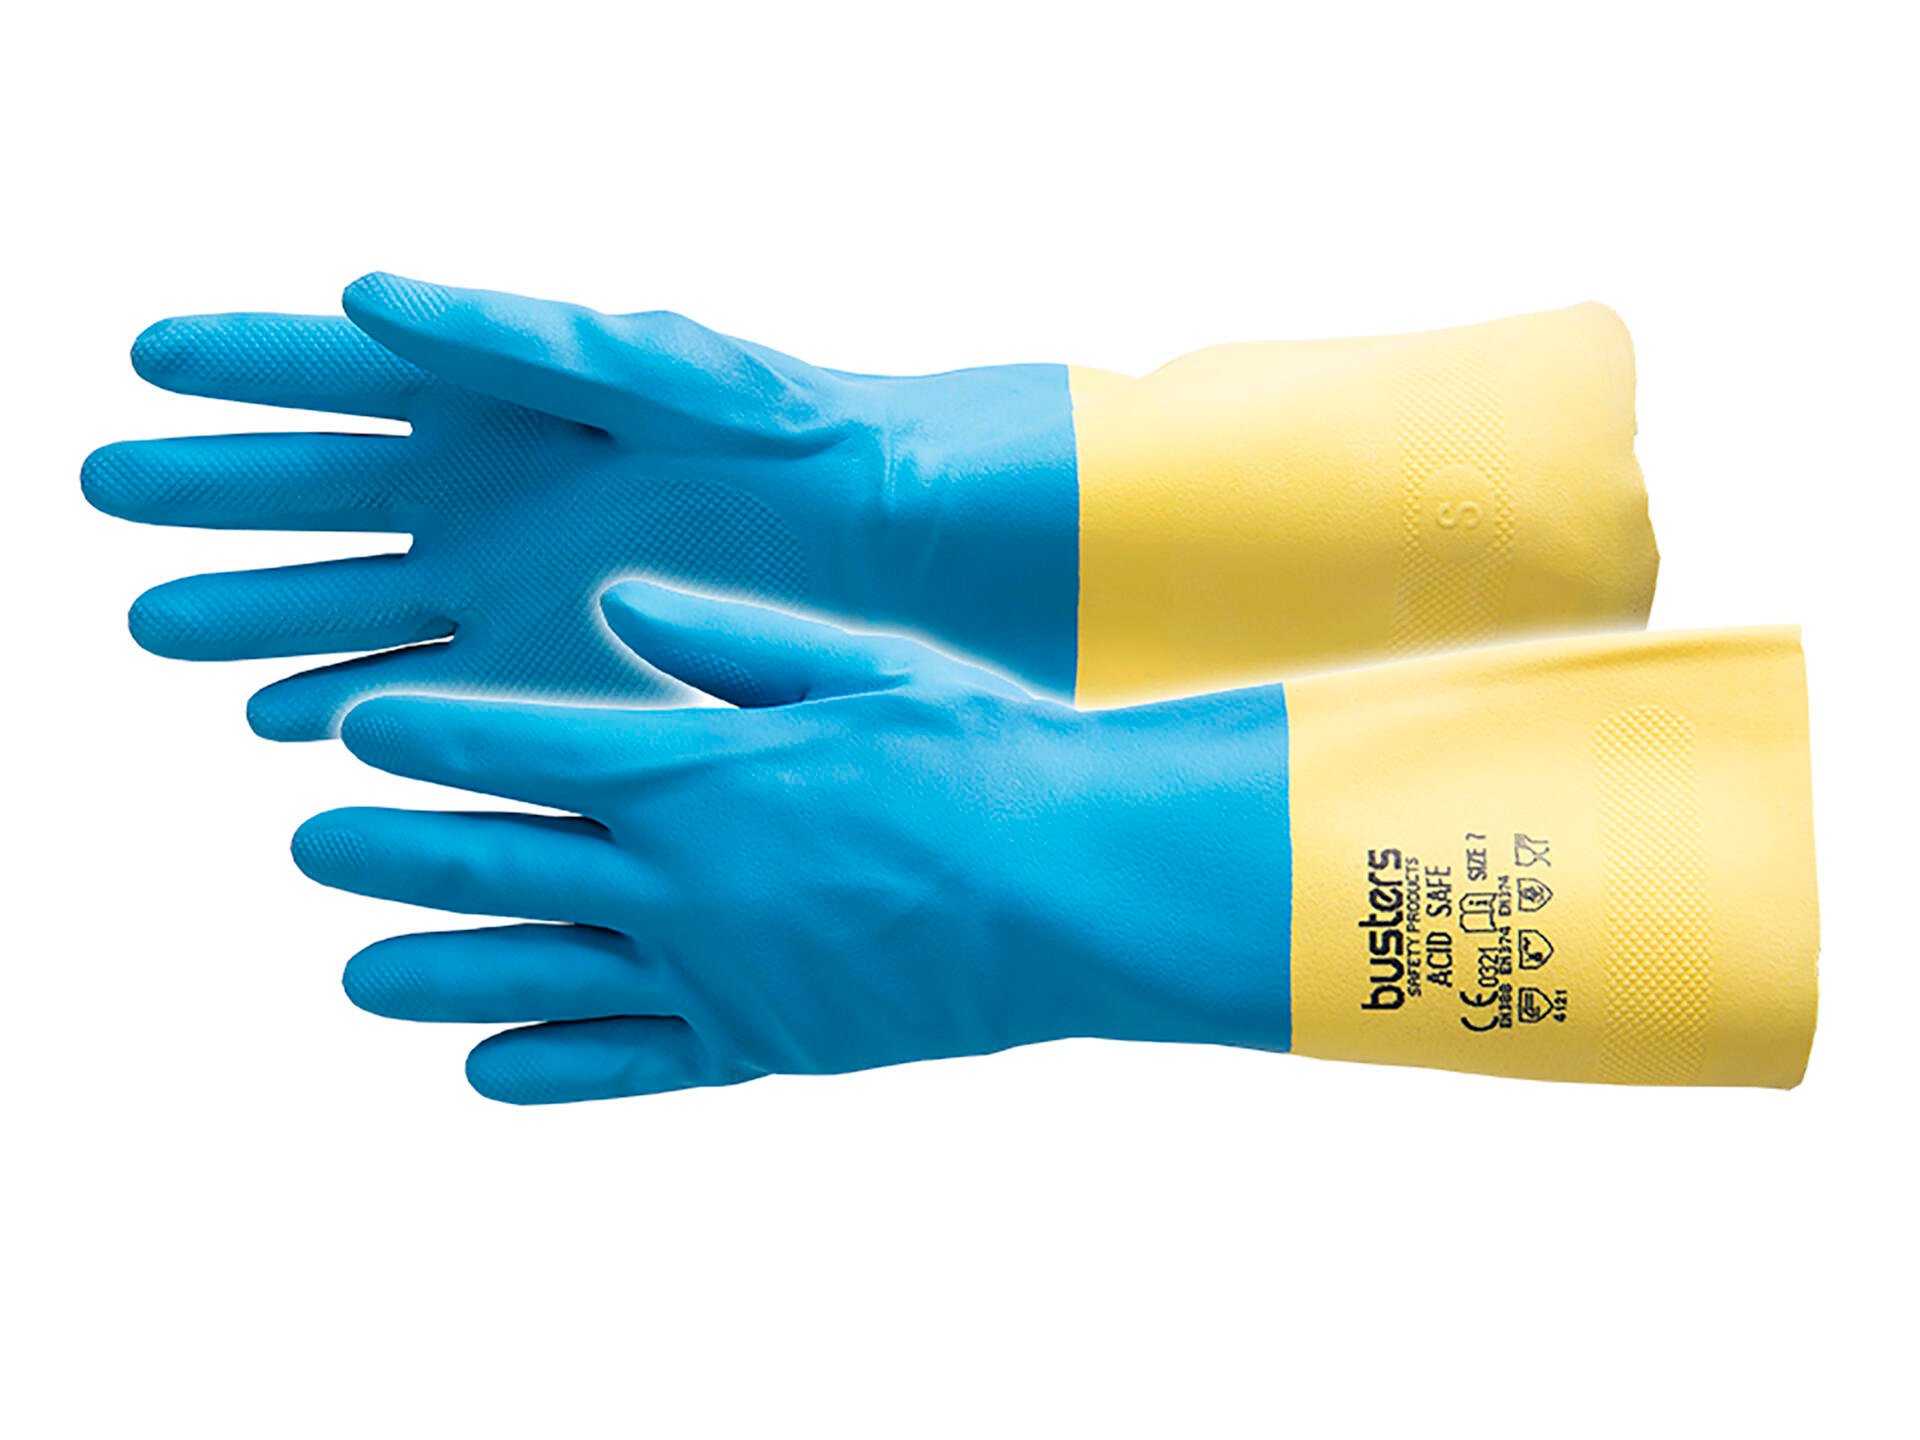 kruising financieel Kostbaar Busters Acid Safe tuishoudhandschoenen S/M latex blauw | Hubo